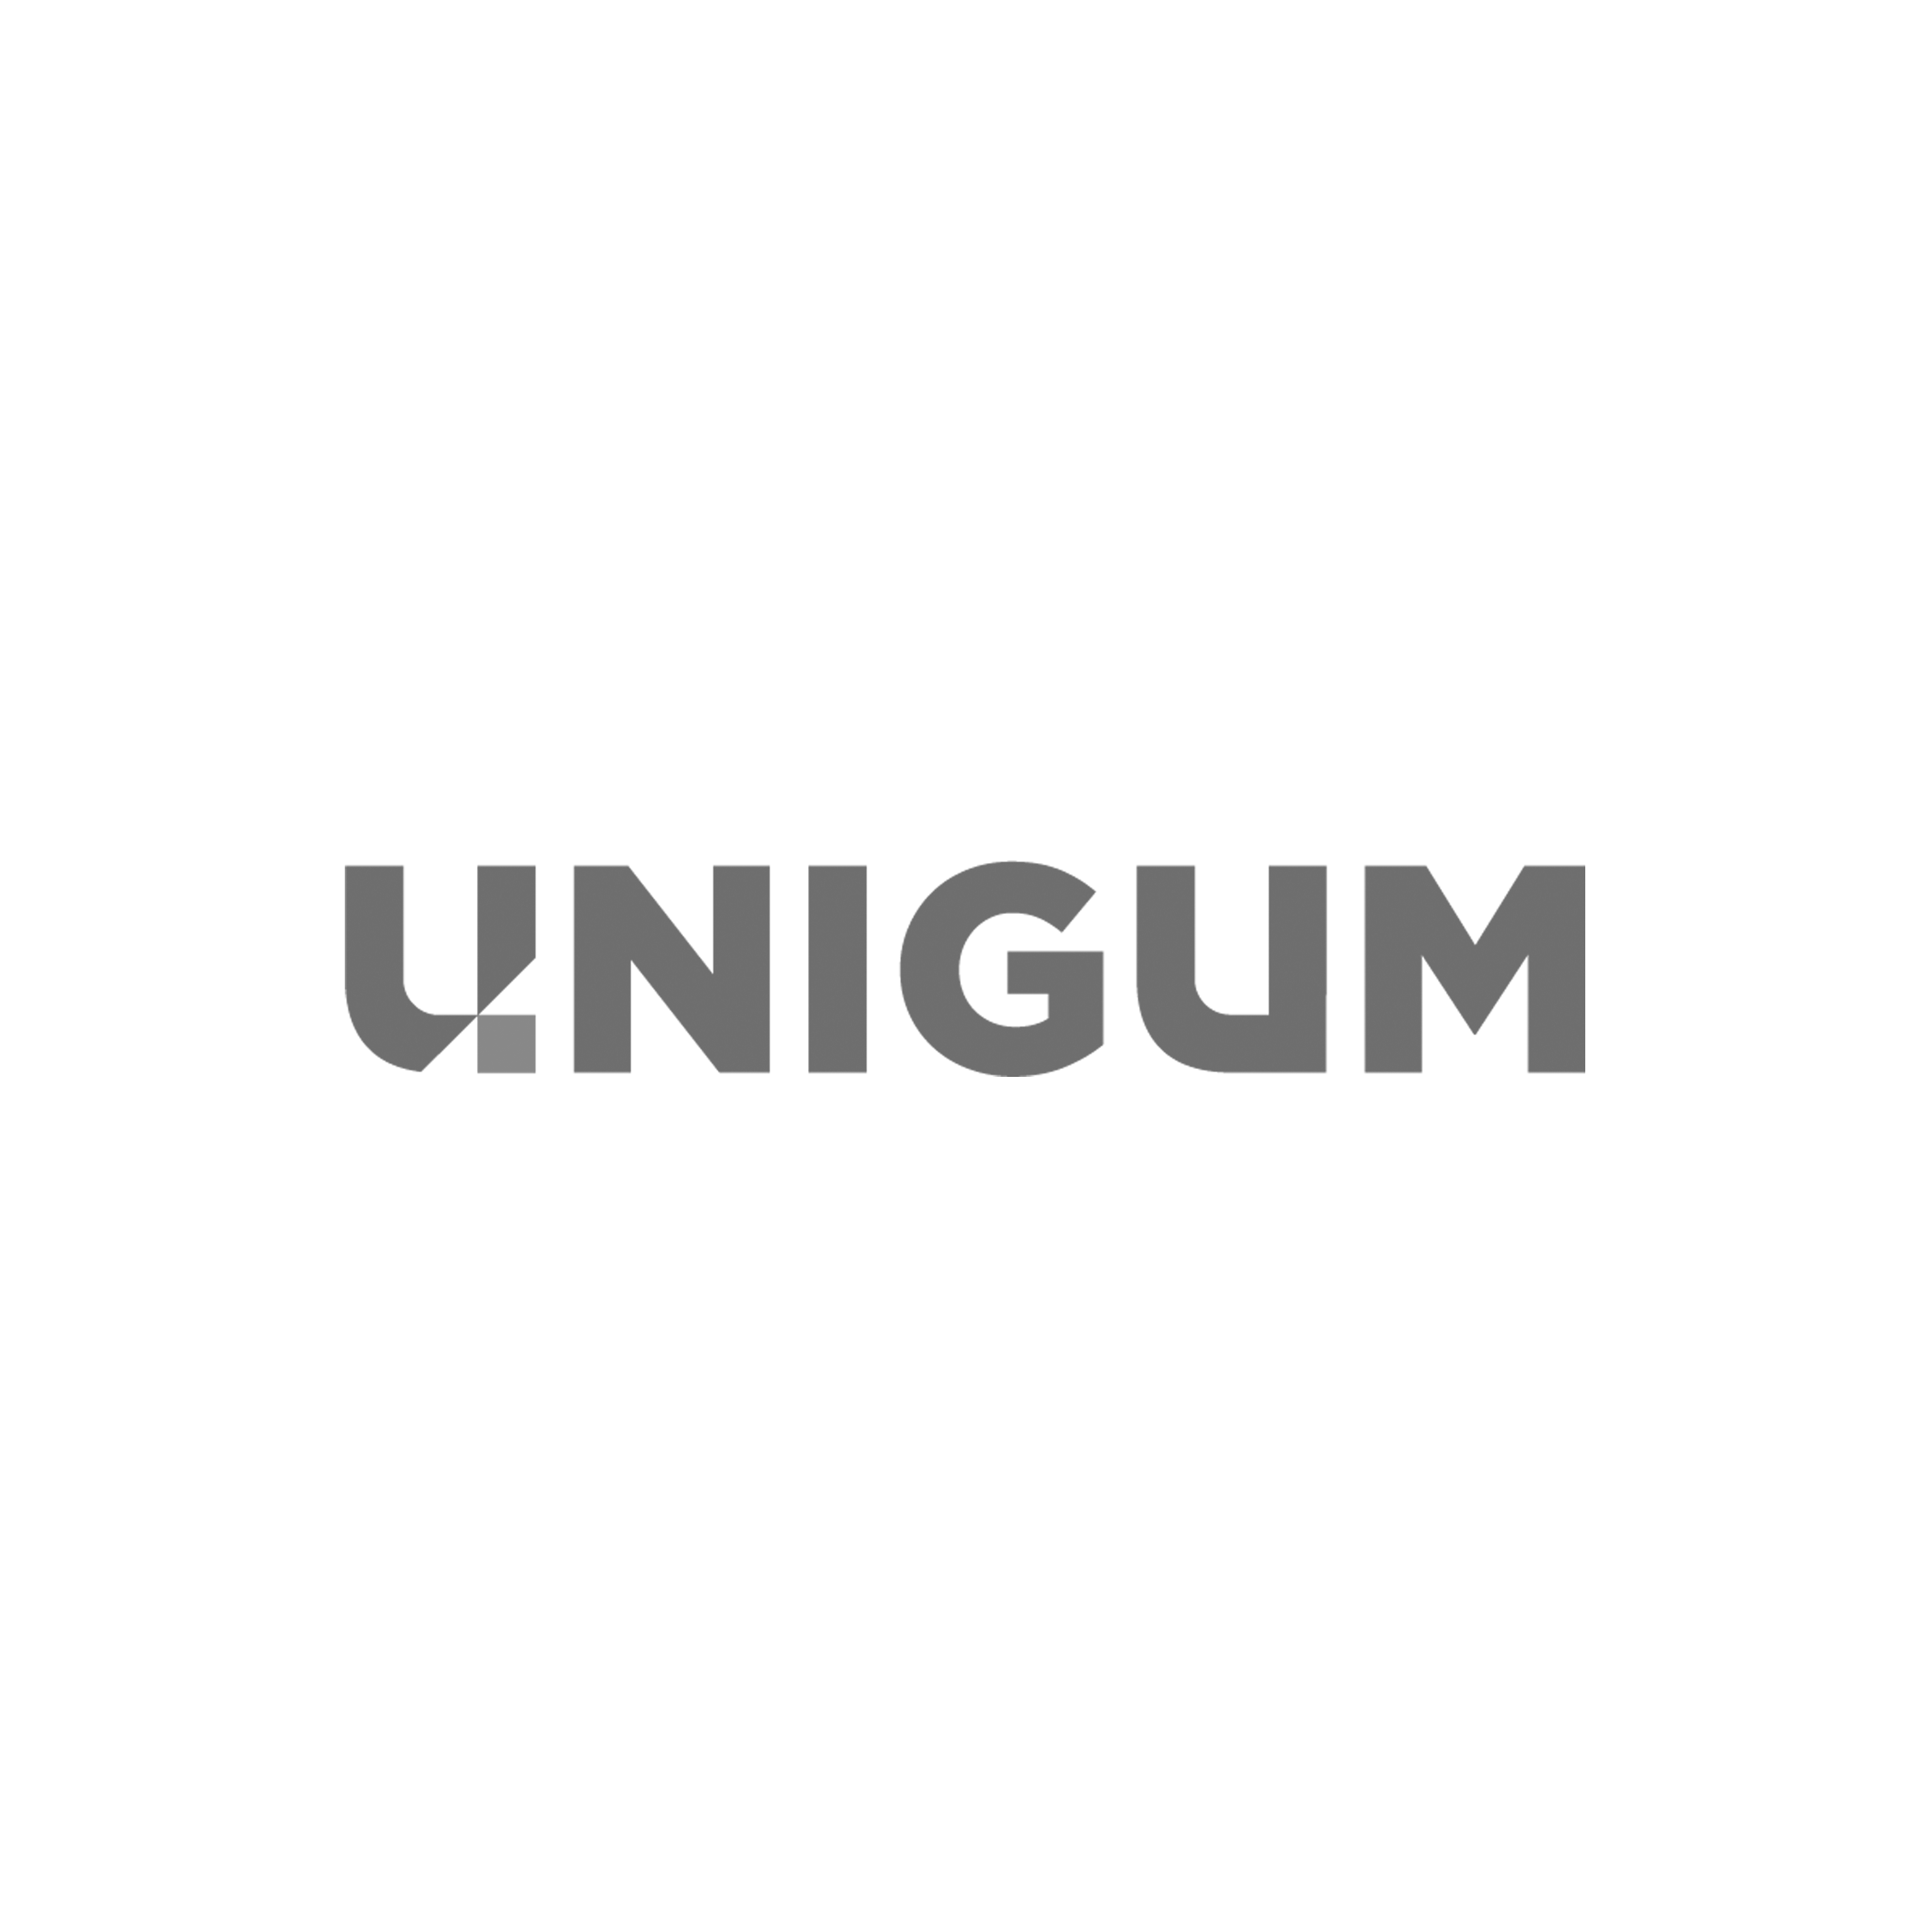 Unigum